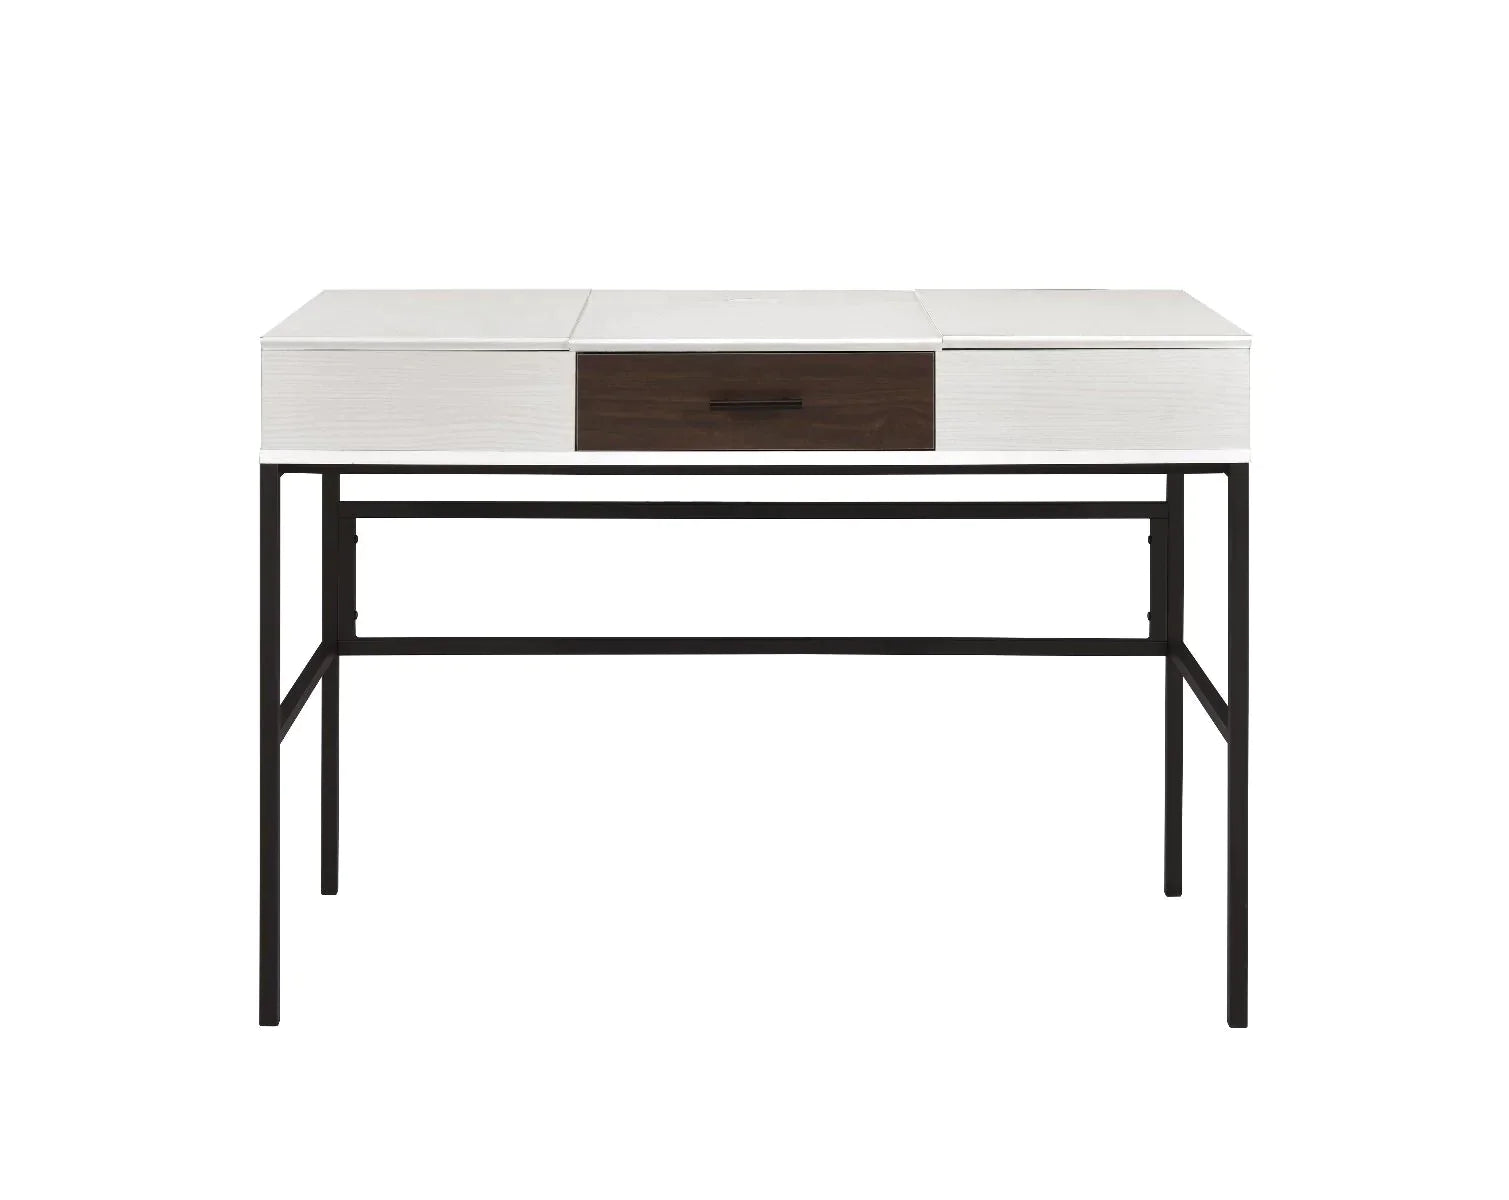 Verster Natural & Black Finish Desk Model 93090 By ACME Furniture